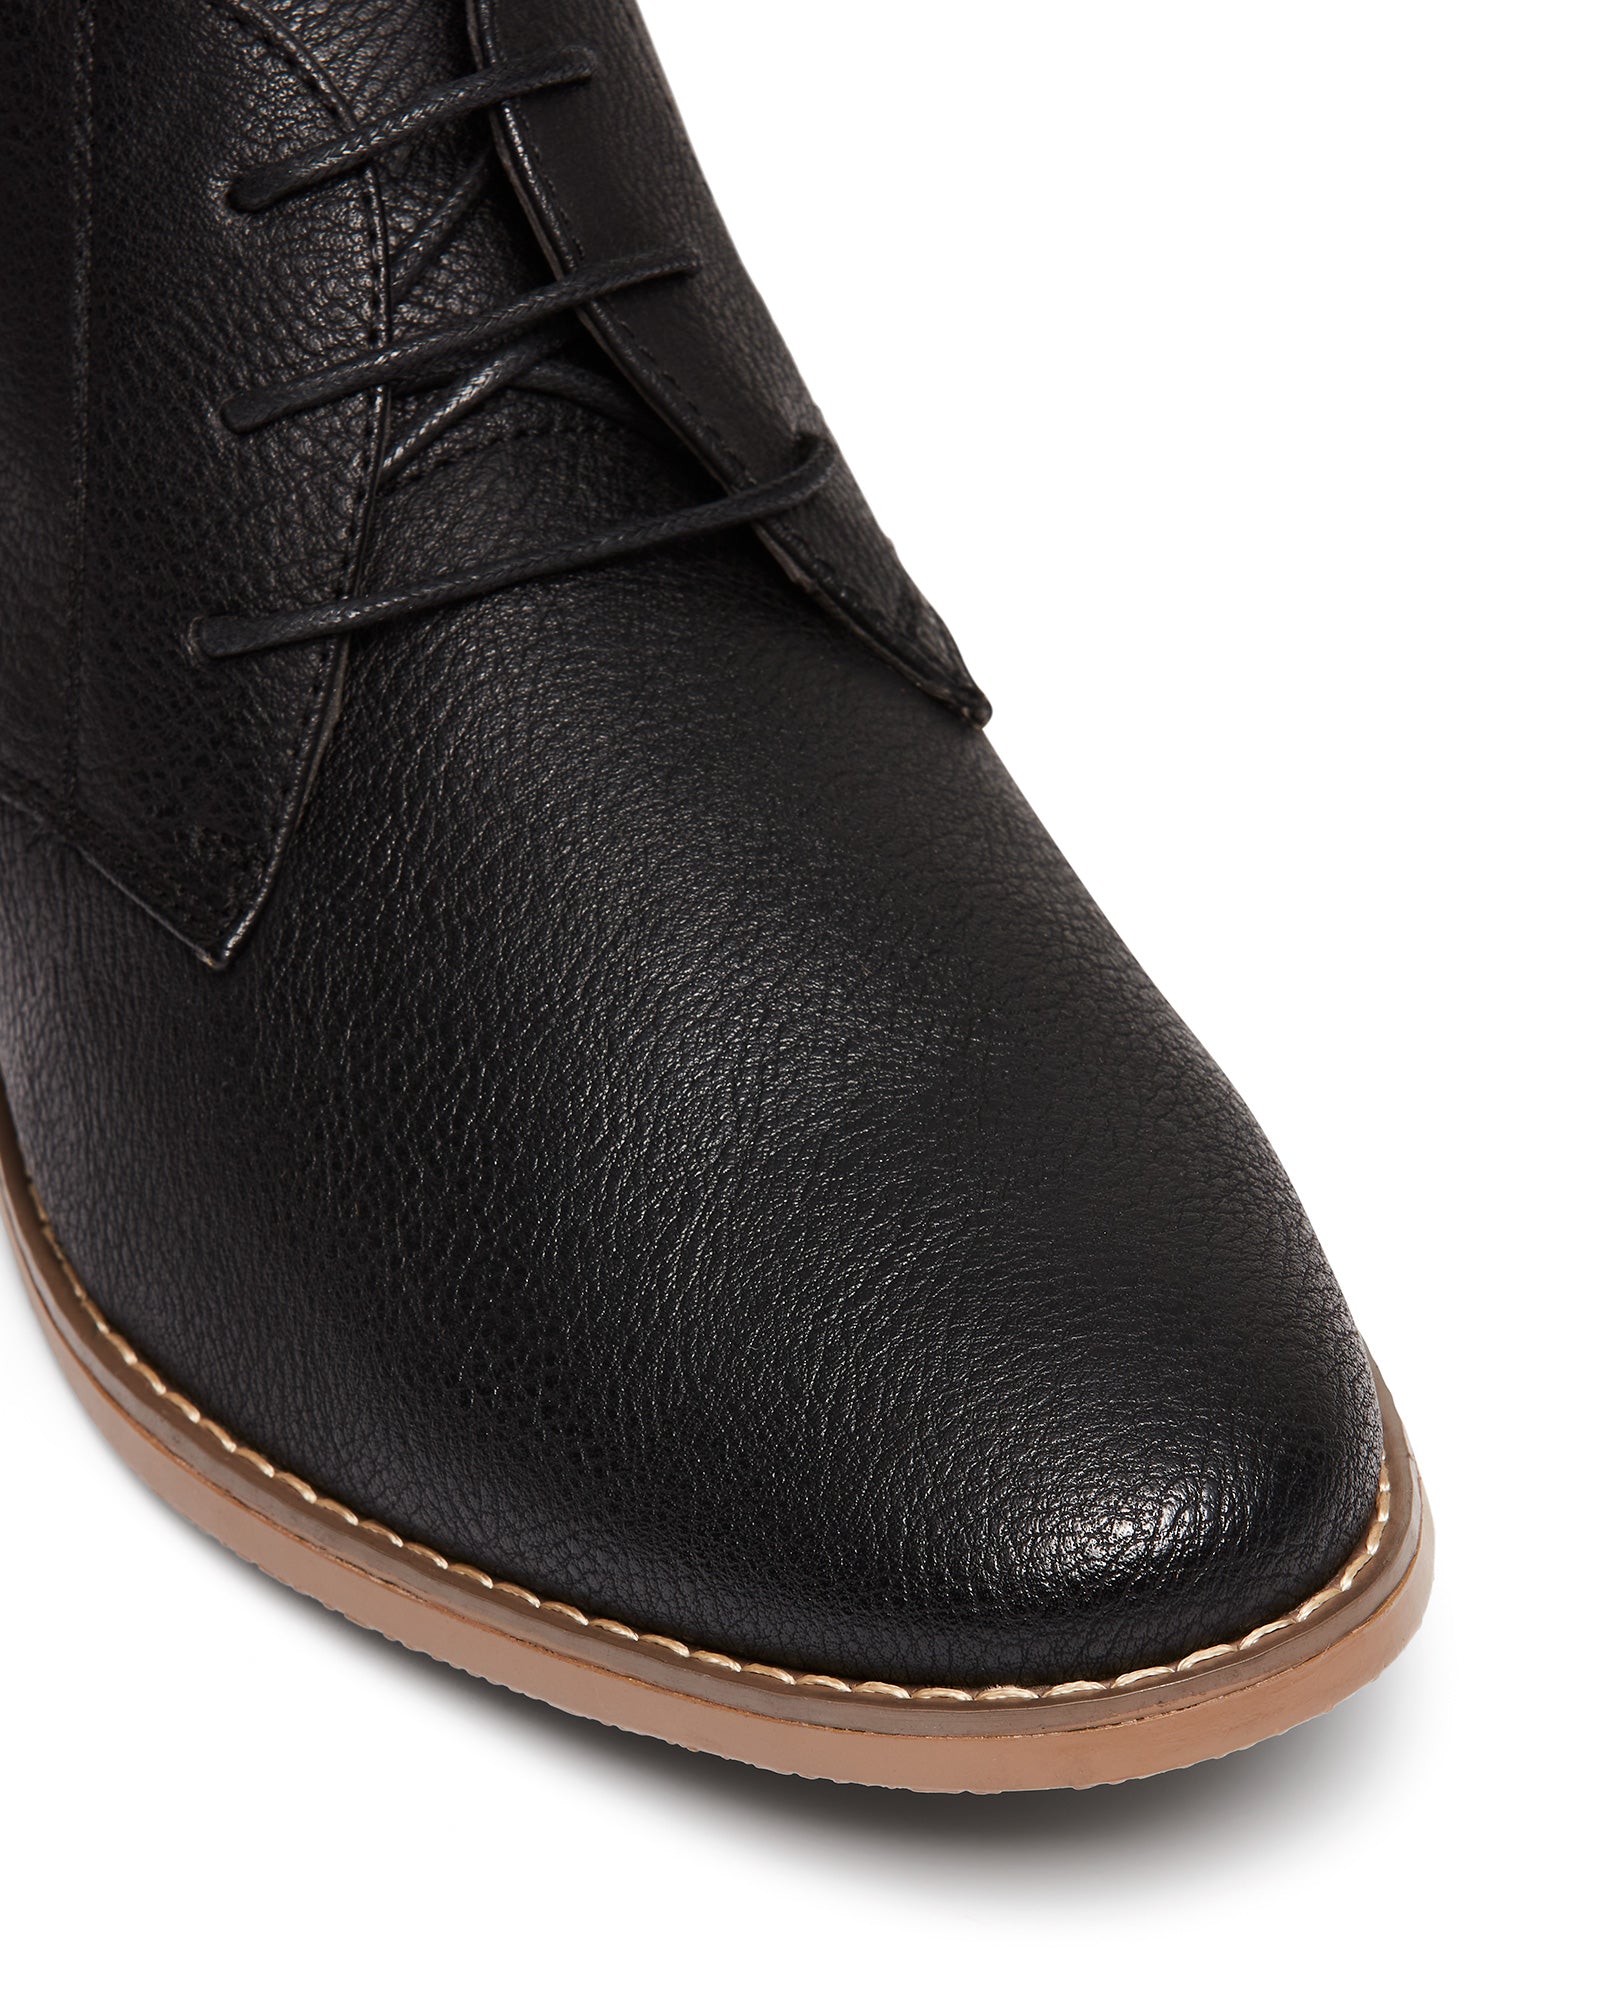 Uncut Shoes Moray Black | Men's Boot | Desert Boot | Lace Up | Dress